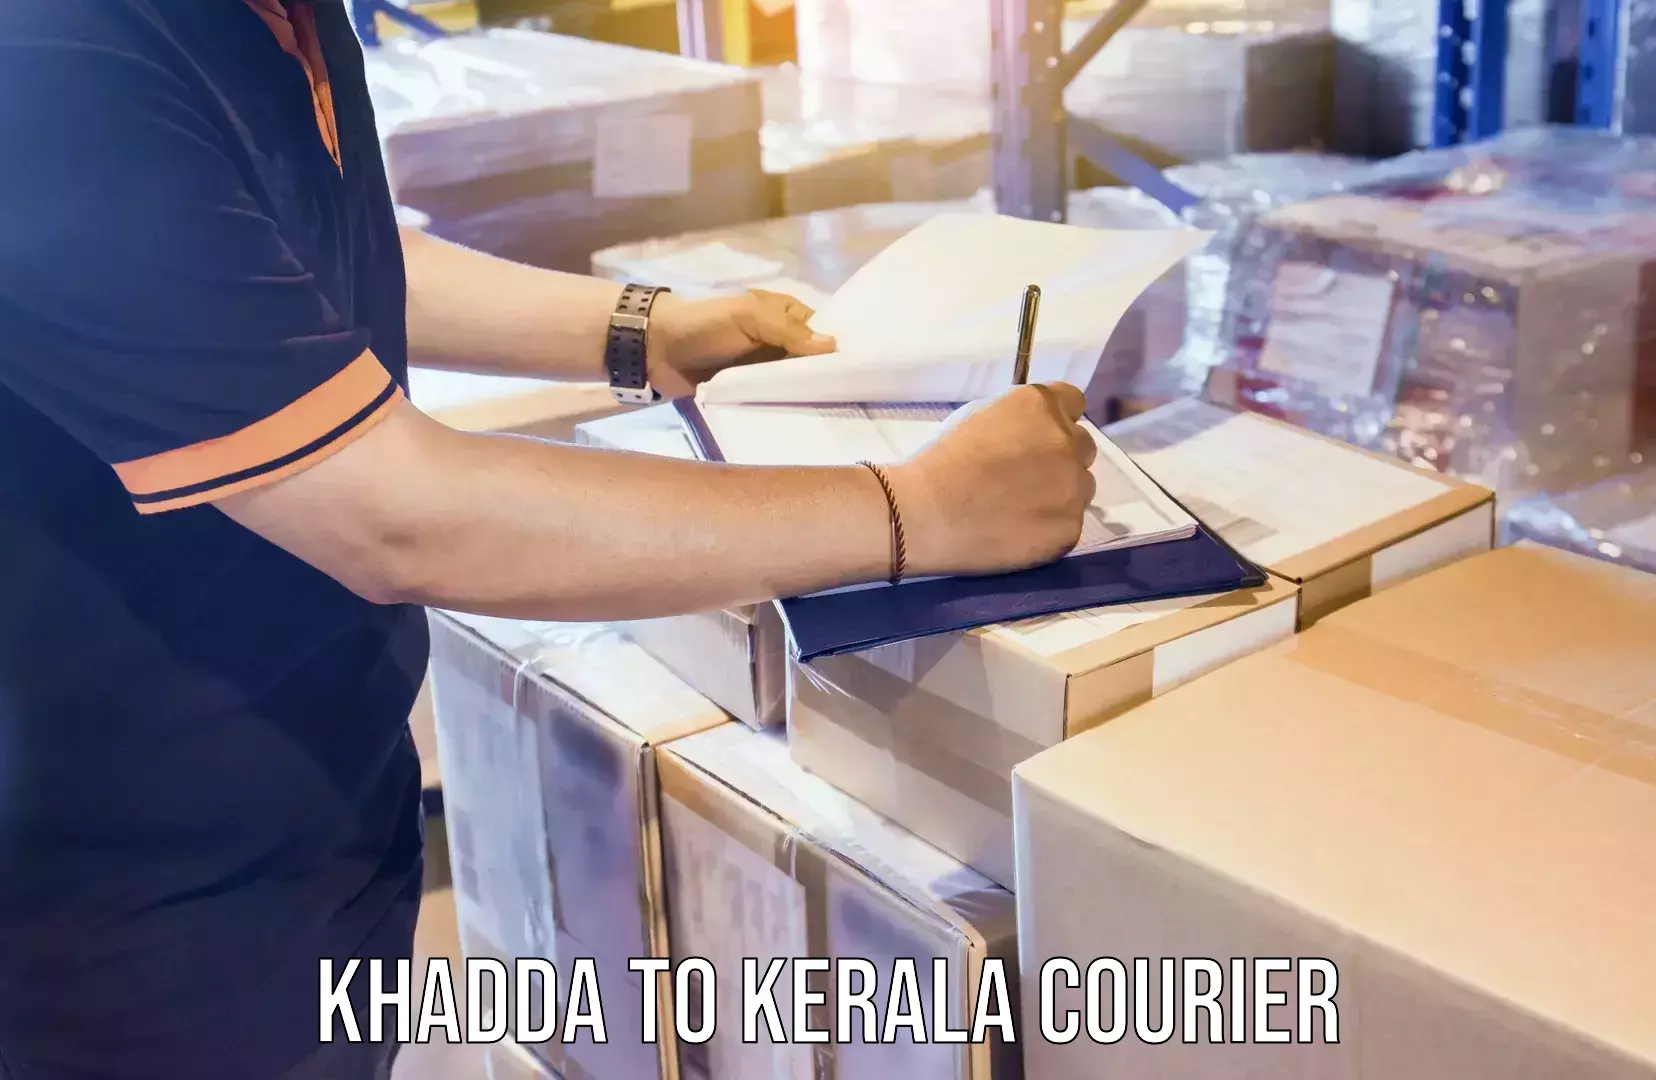 Residential moving experts Khadda to Kerala